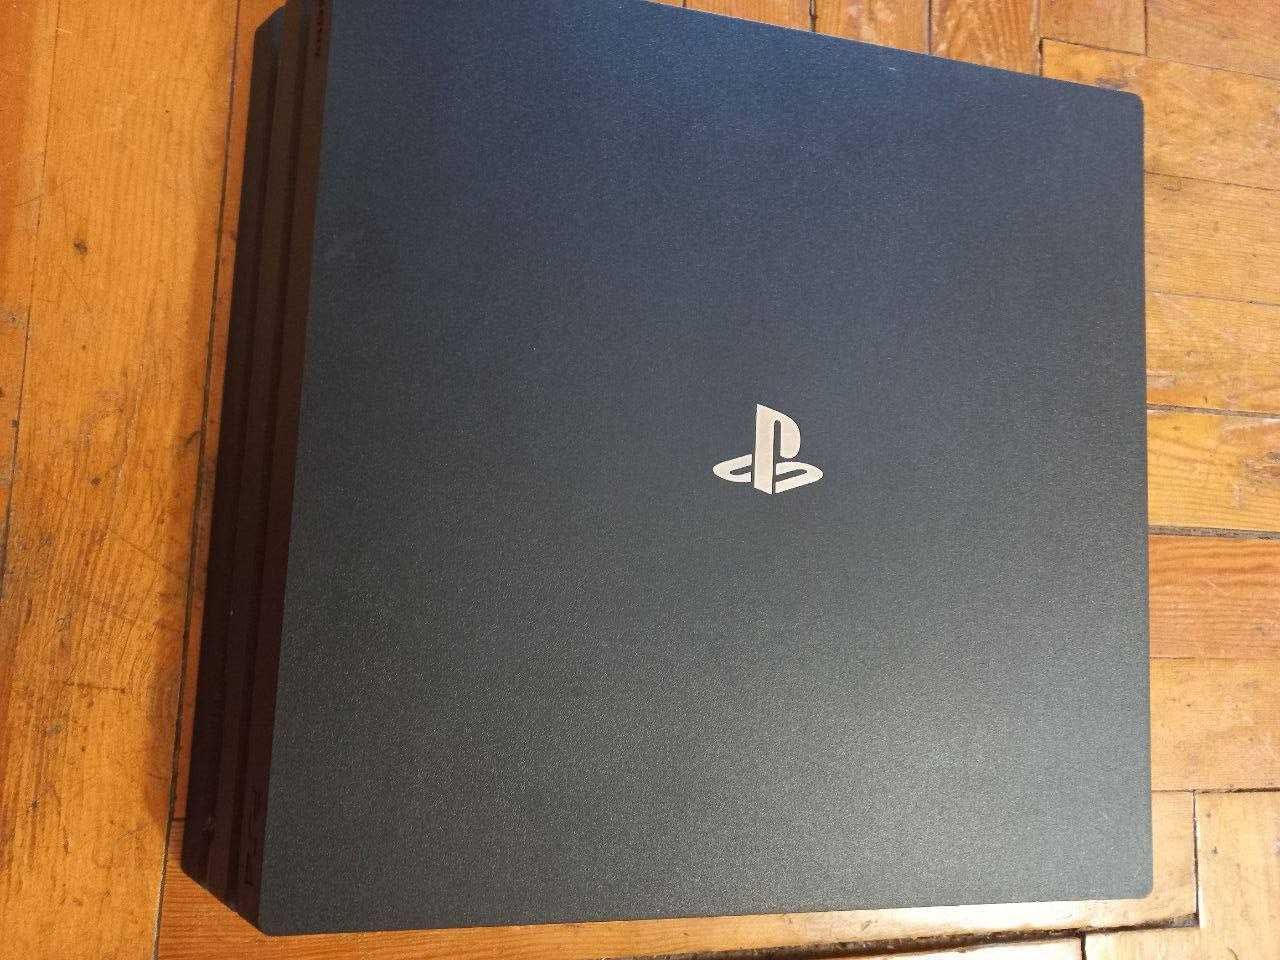 Консоль Sony PlayStation 4. Приставка.